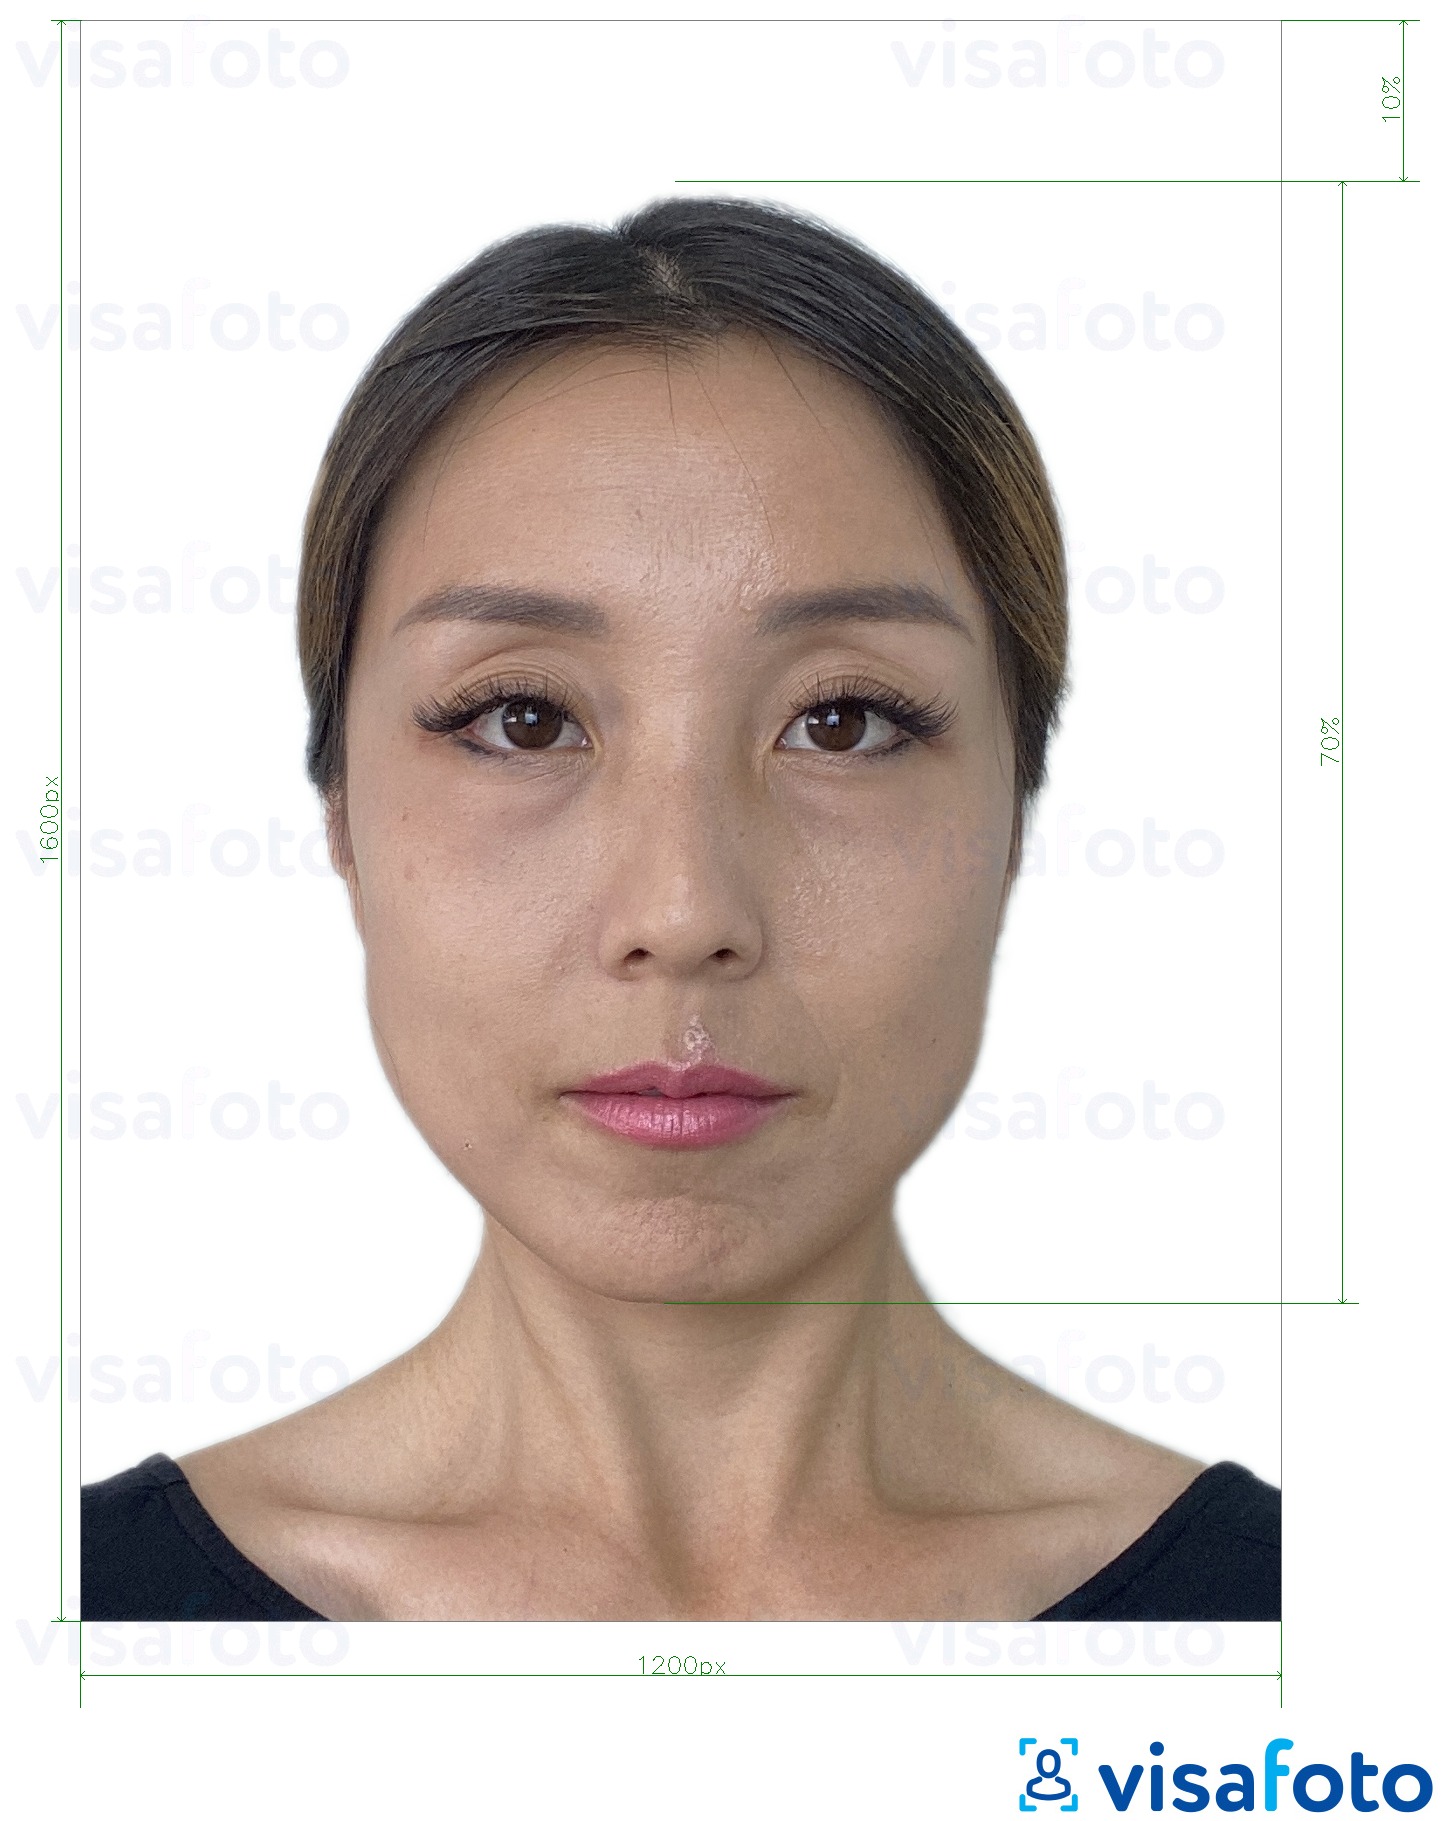 так көлөмү көрсөтүү менен Гонг-Конг электрондук паспорт 1200x1600 пиксел сүрөтү үлгүсү